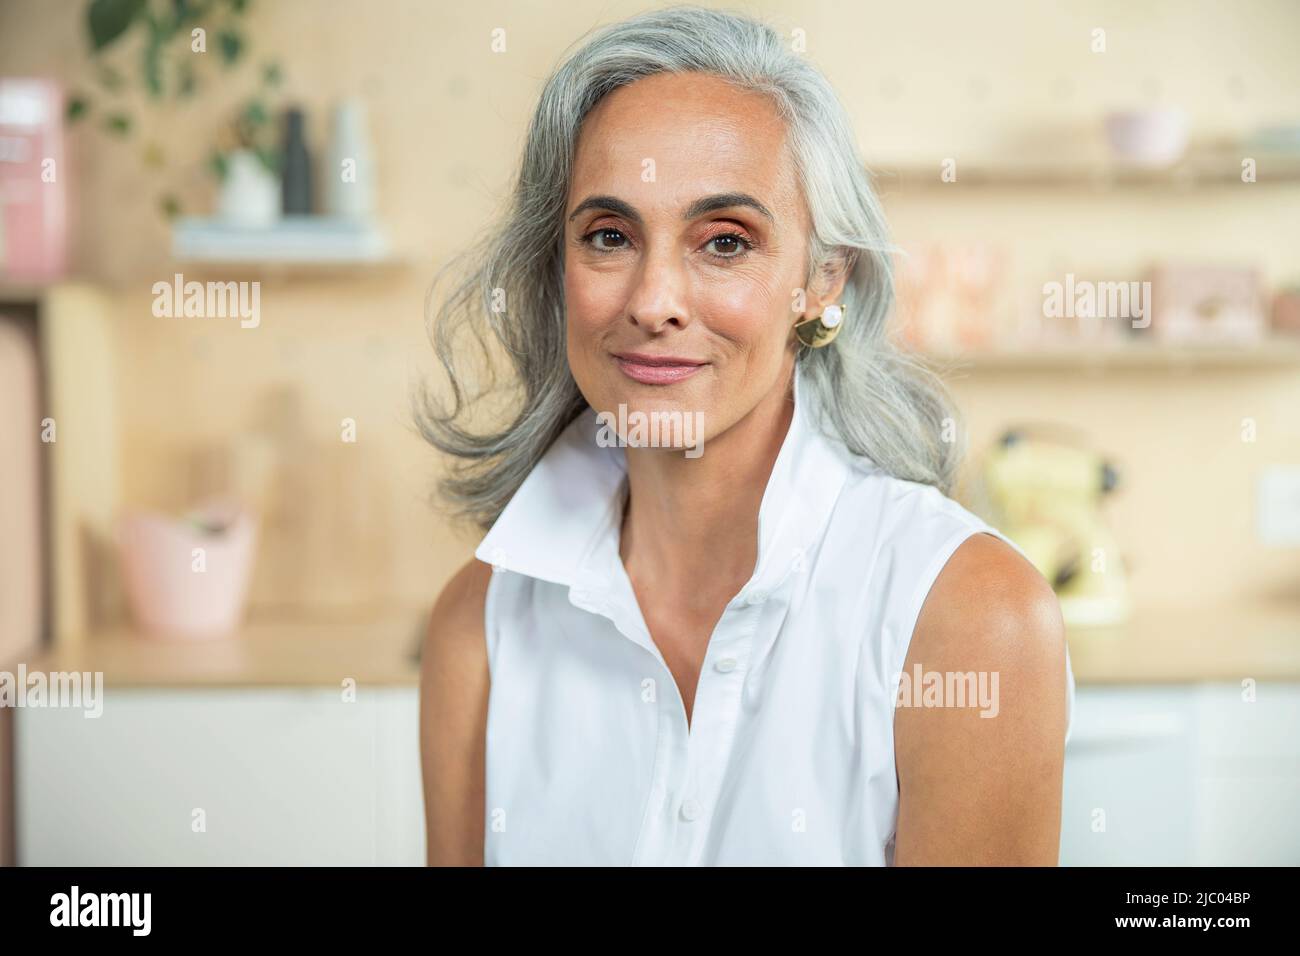 Primo piano ritratto di una donna di mezza età con capelli grigi naturali guardando la fotocamera con un sorriso caldo. Foto Stock